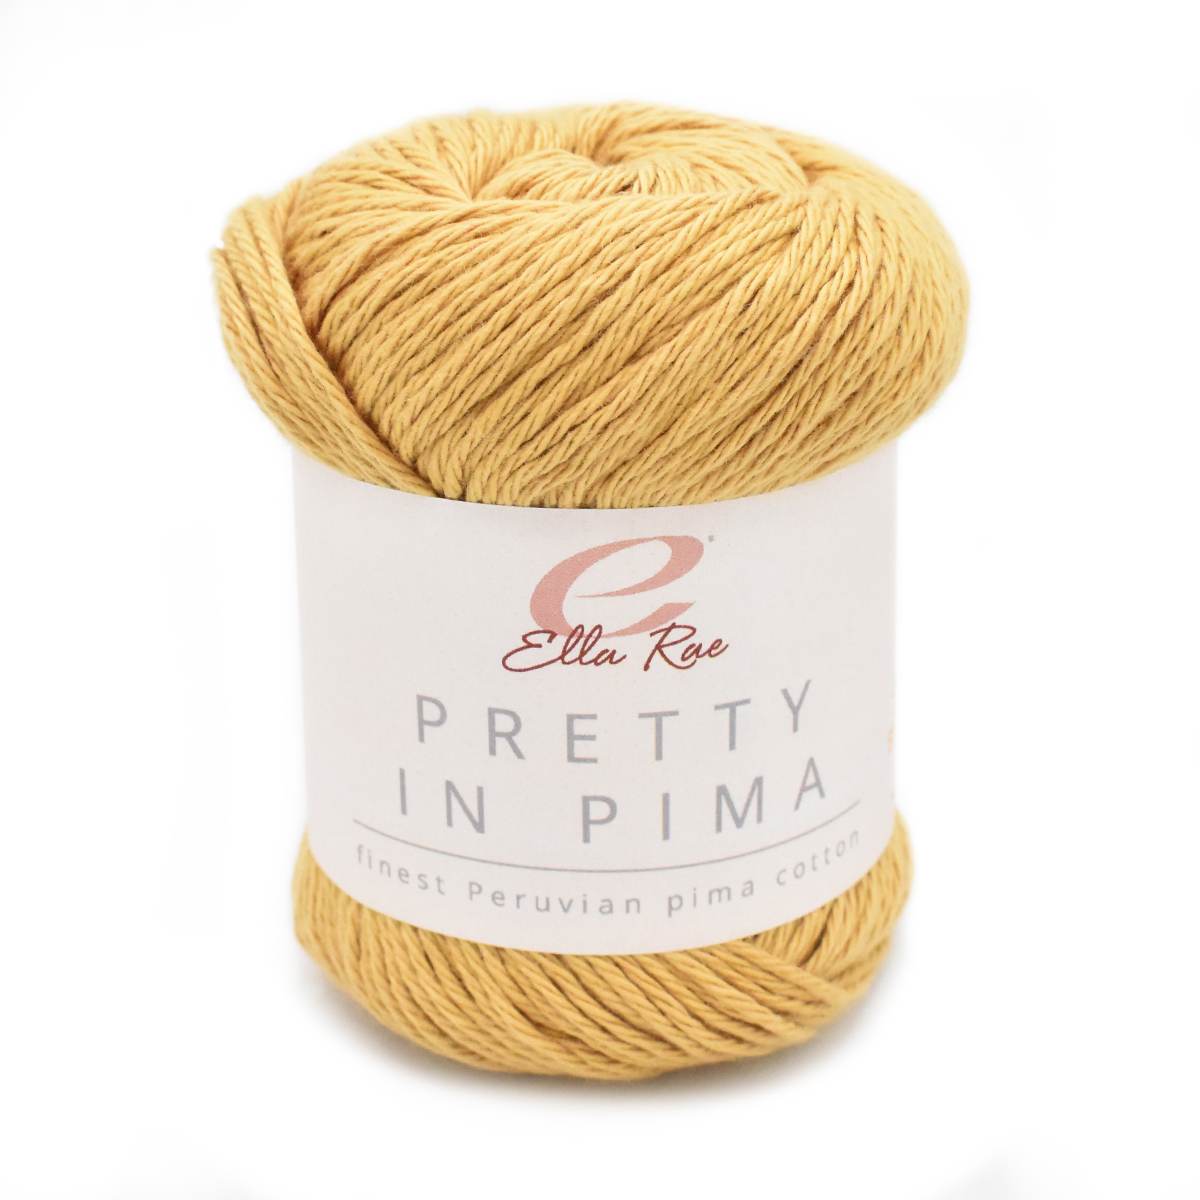 a skein of Pretty in Pima